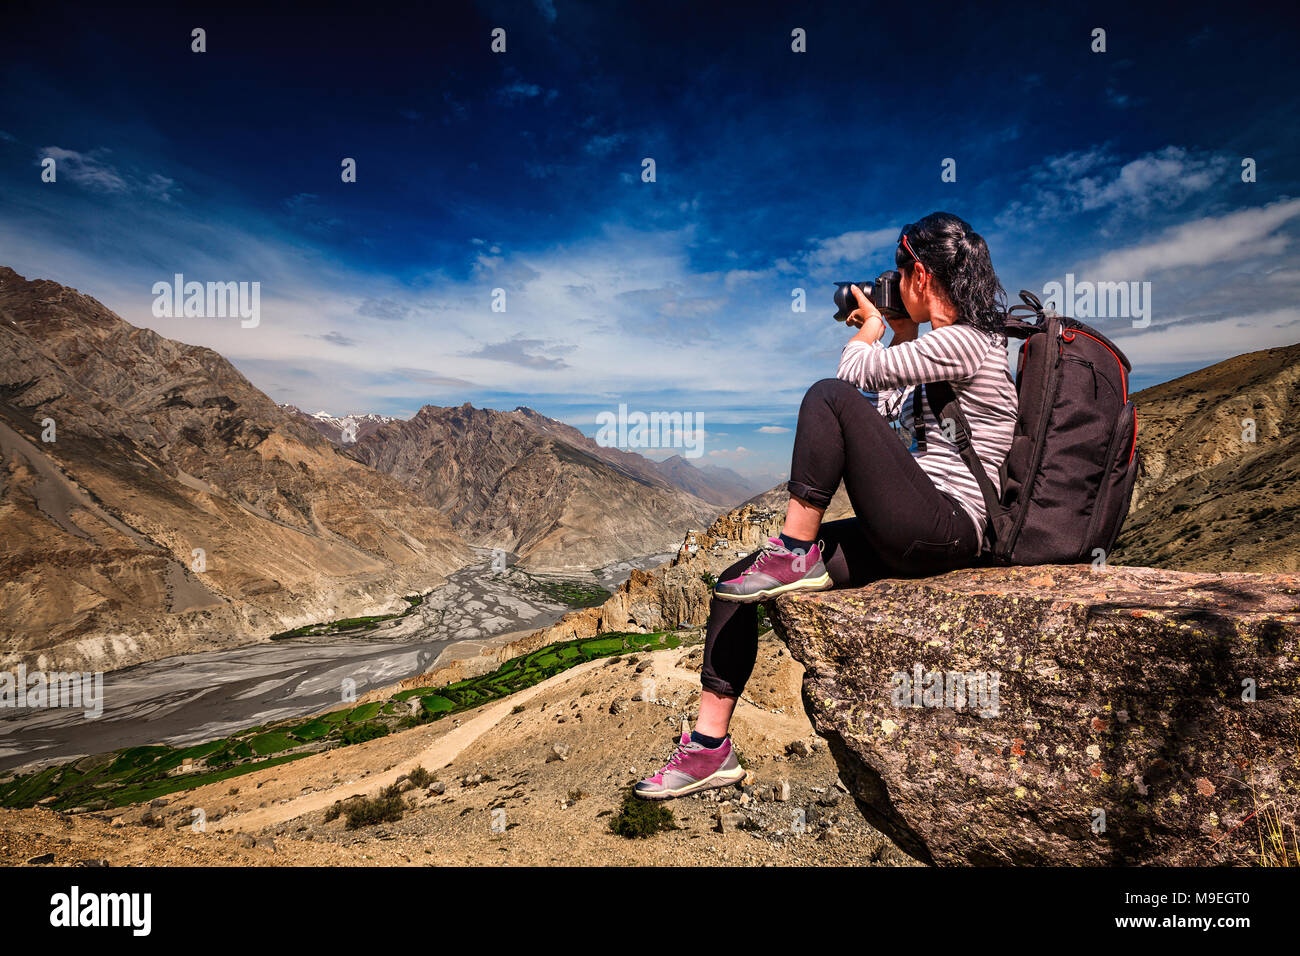 Dhankar gompa. La vallée de Spiti, Himachal Pradesh, Inde. Photographe Nature touriste avec appareil photo shoots en se tenant sur le haut de la montagne. Banque D'Images